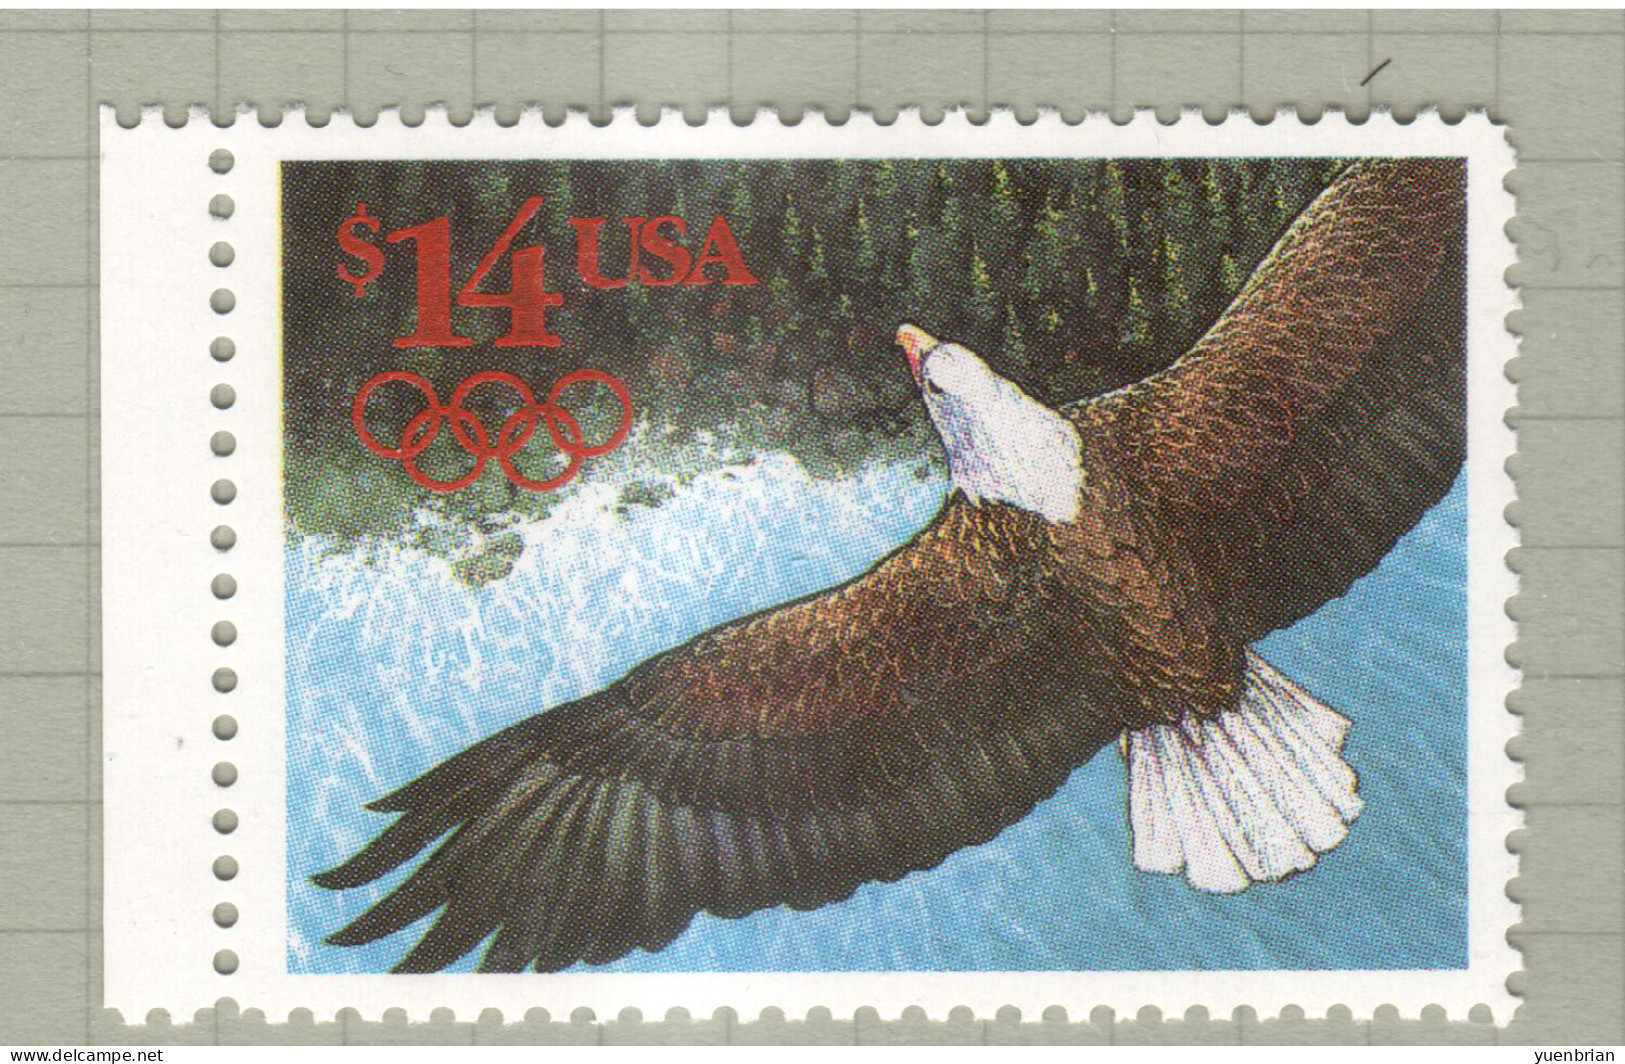 USA 1991, Bird, Birds, American Bald Eagle, 1v, MNH**, Excellent Condition - Aquile & Rapaci Diurni